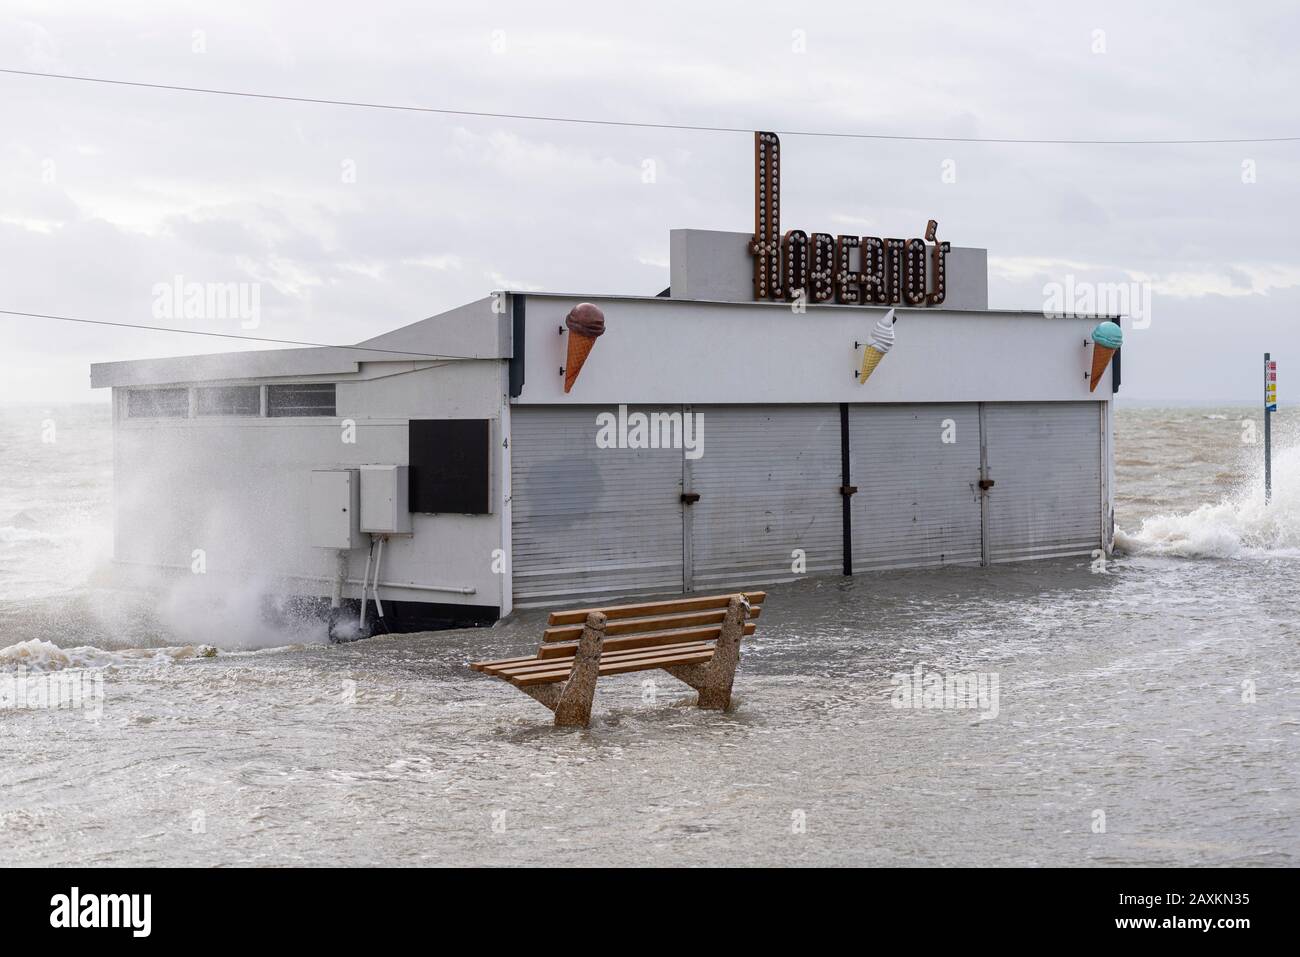 Roberto's Geschäfte am Meer sind von Überschwemmungen während der Flut Sturmflut nach Storm Ciara in Southend on Sea, Essex, Großbritannien, durchflutet. Überfüllt Stockfoto